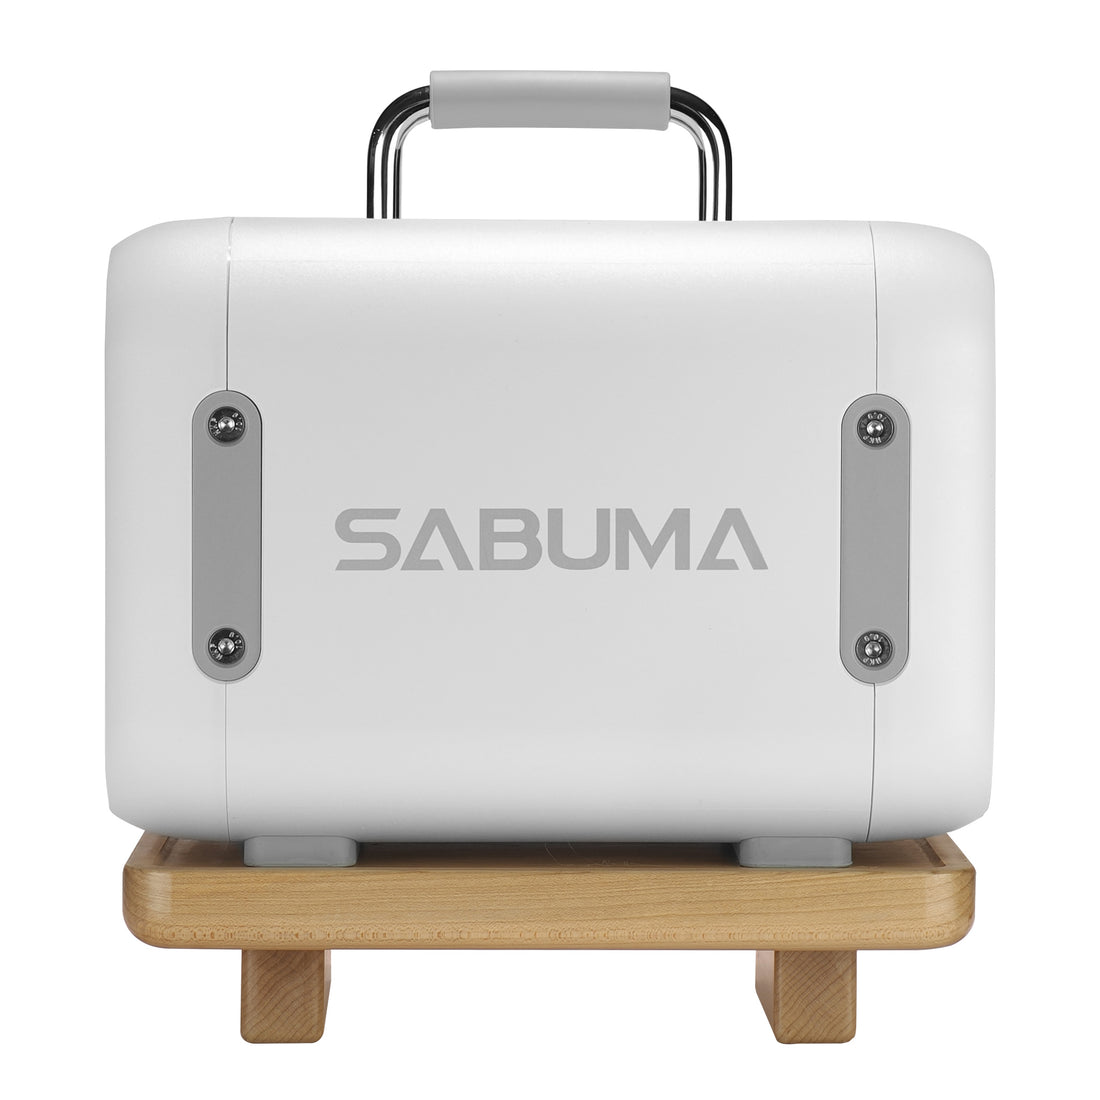 新商品】SABUMA ポータブル電源 S600 アクセサリーセット – SABUMA公式